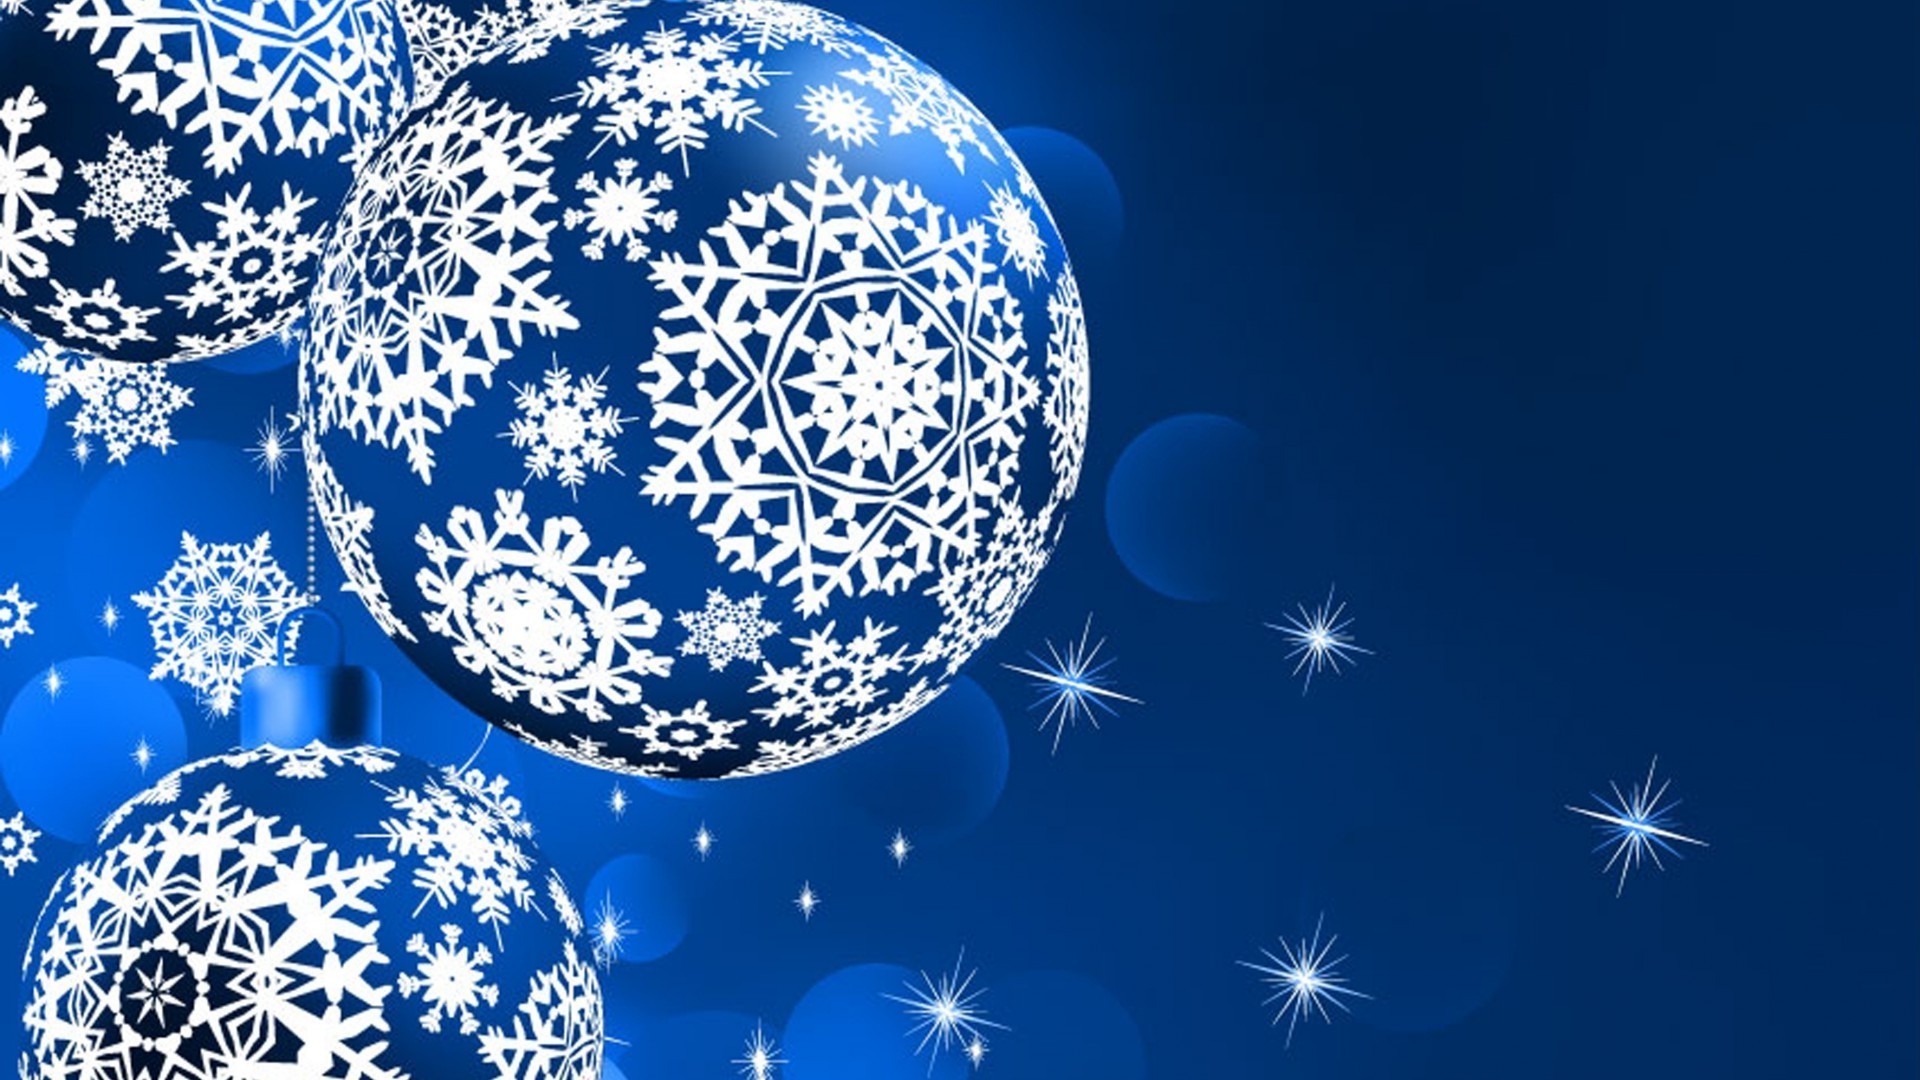 новый год снежинка рождество зима украшения мерри аннотация иллюстрация снег сфера дизайн рабочего стола карта праздник мяч обои вектор мороз блестят шаблон яркий